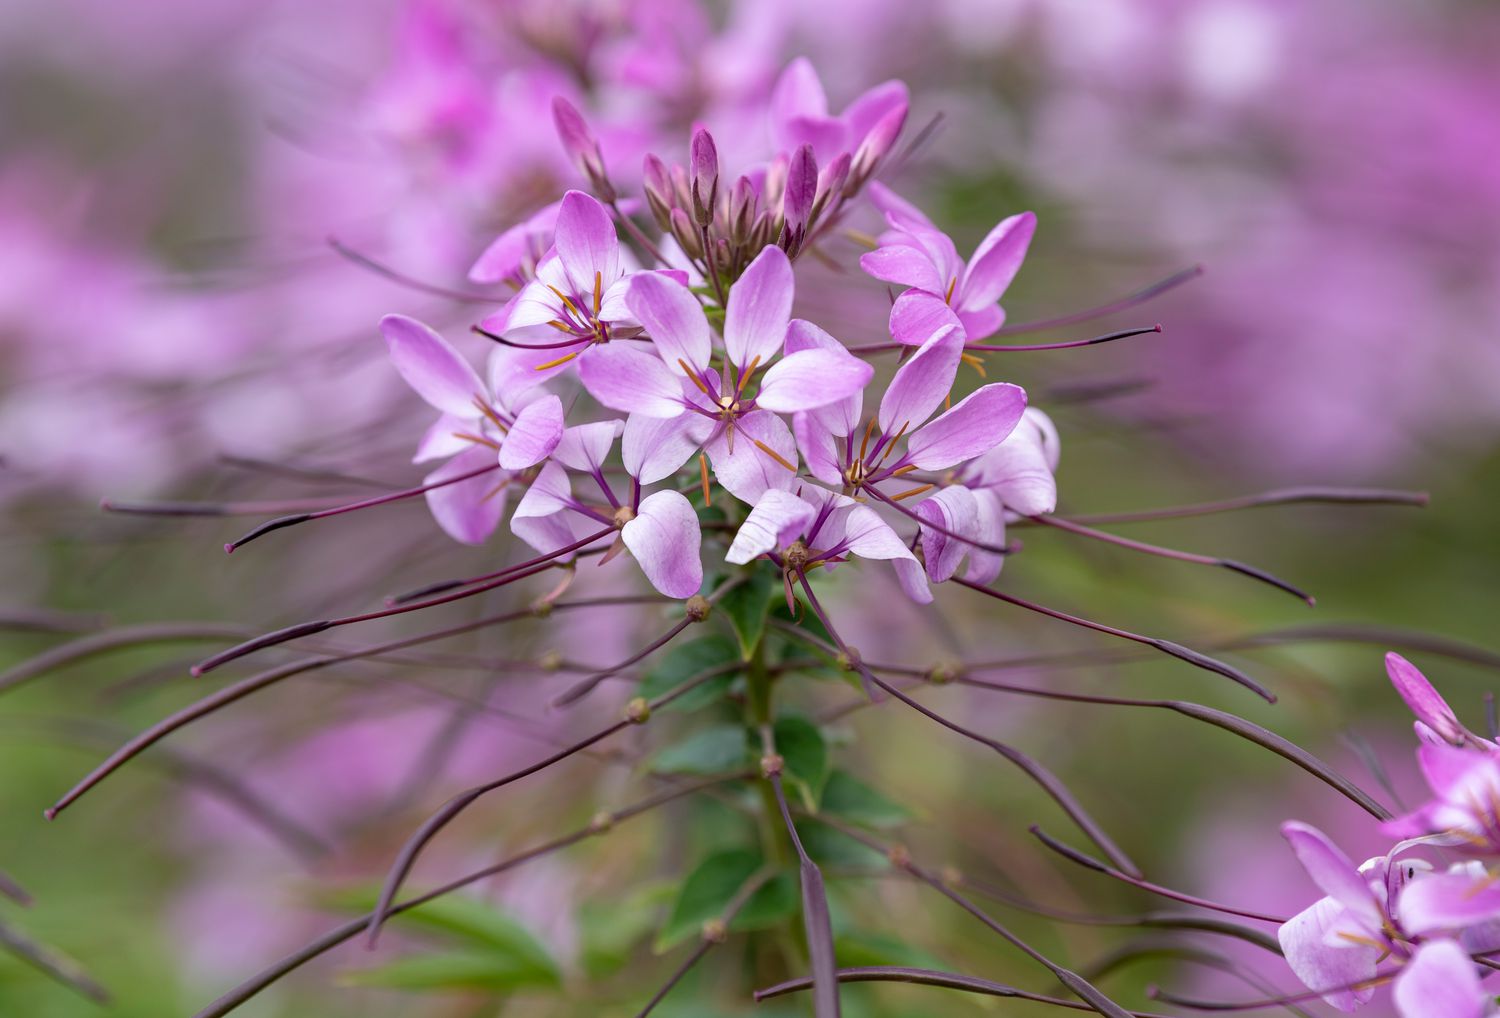 Cleome-Pflanze mit kleinen Blütenbüscheln aus rosa und weißen Blütenblättern, die von langen Staubgefäßen umgeben sind, Nahaufnahme